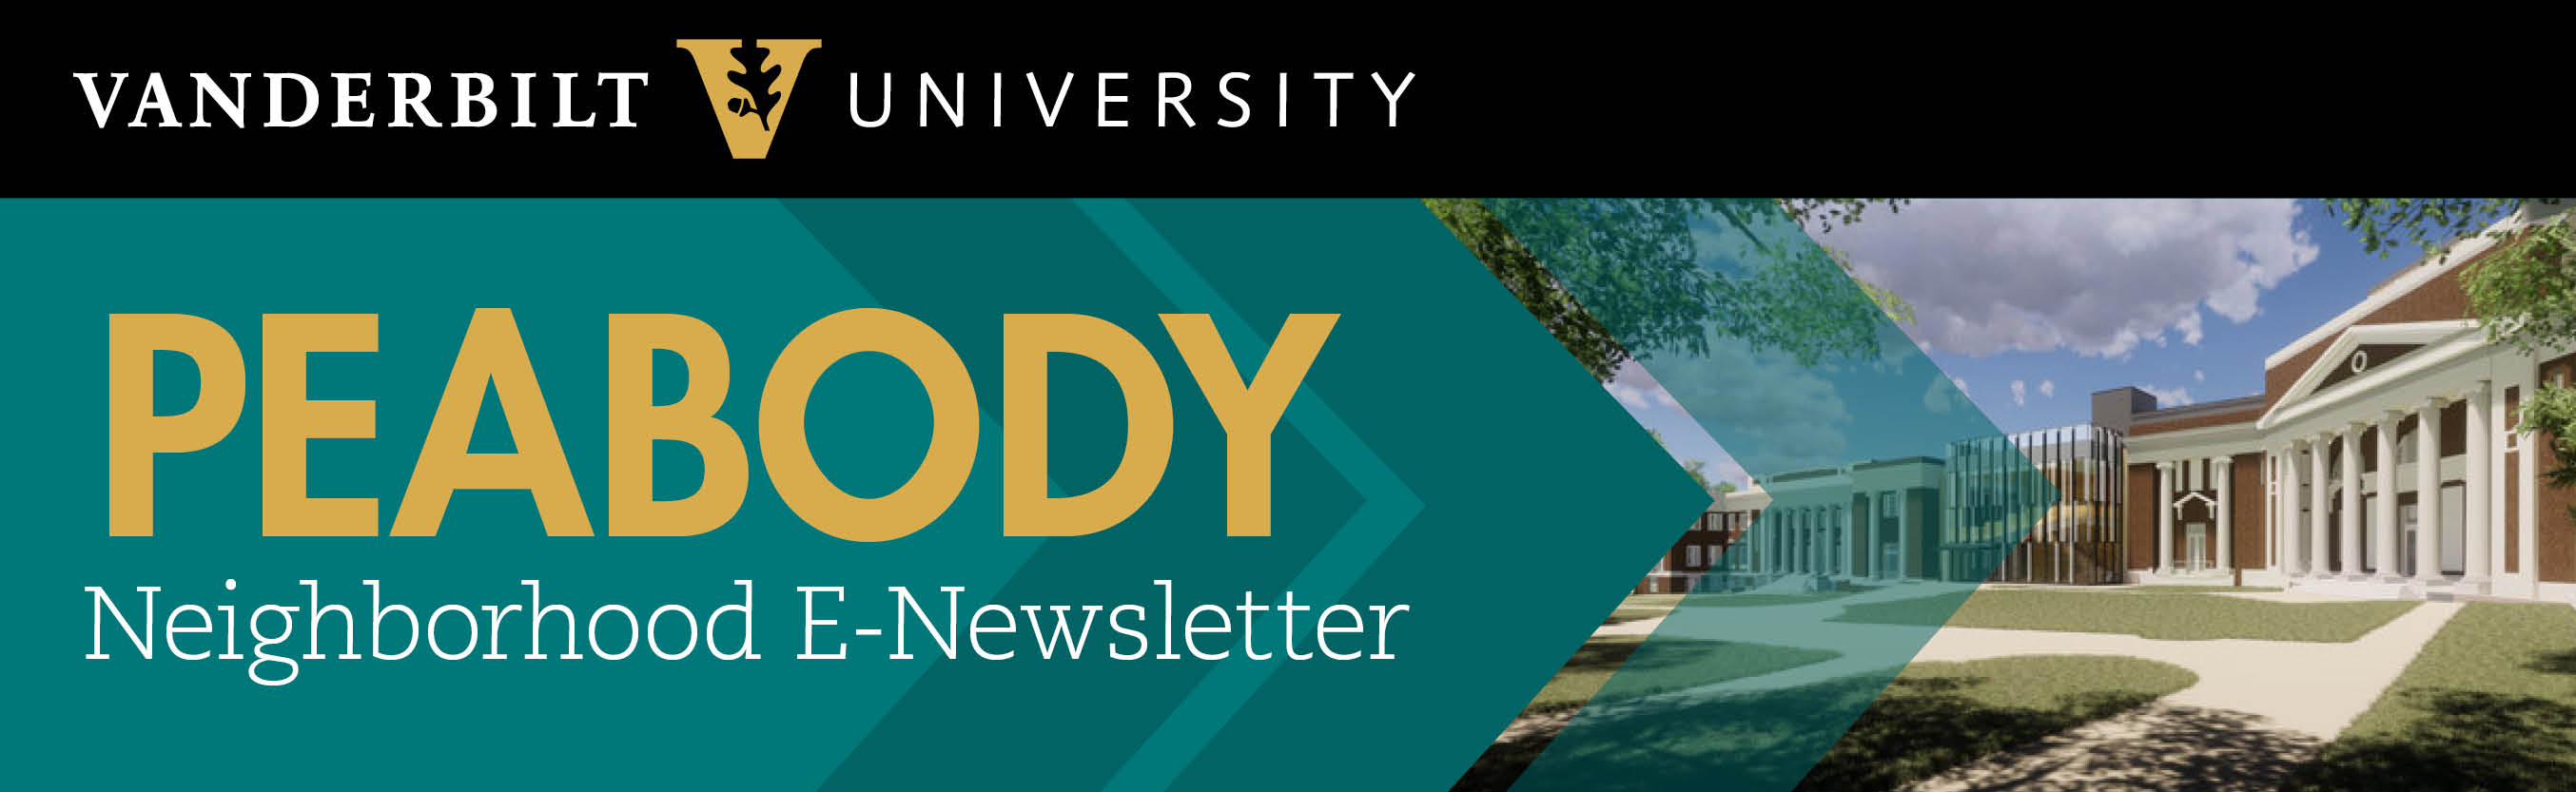 Peabody Neighborhood Newsletter E-Newsletter [Vanderbilt University]